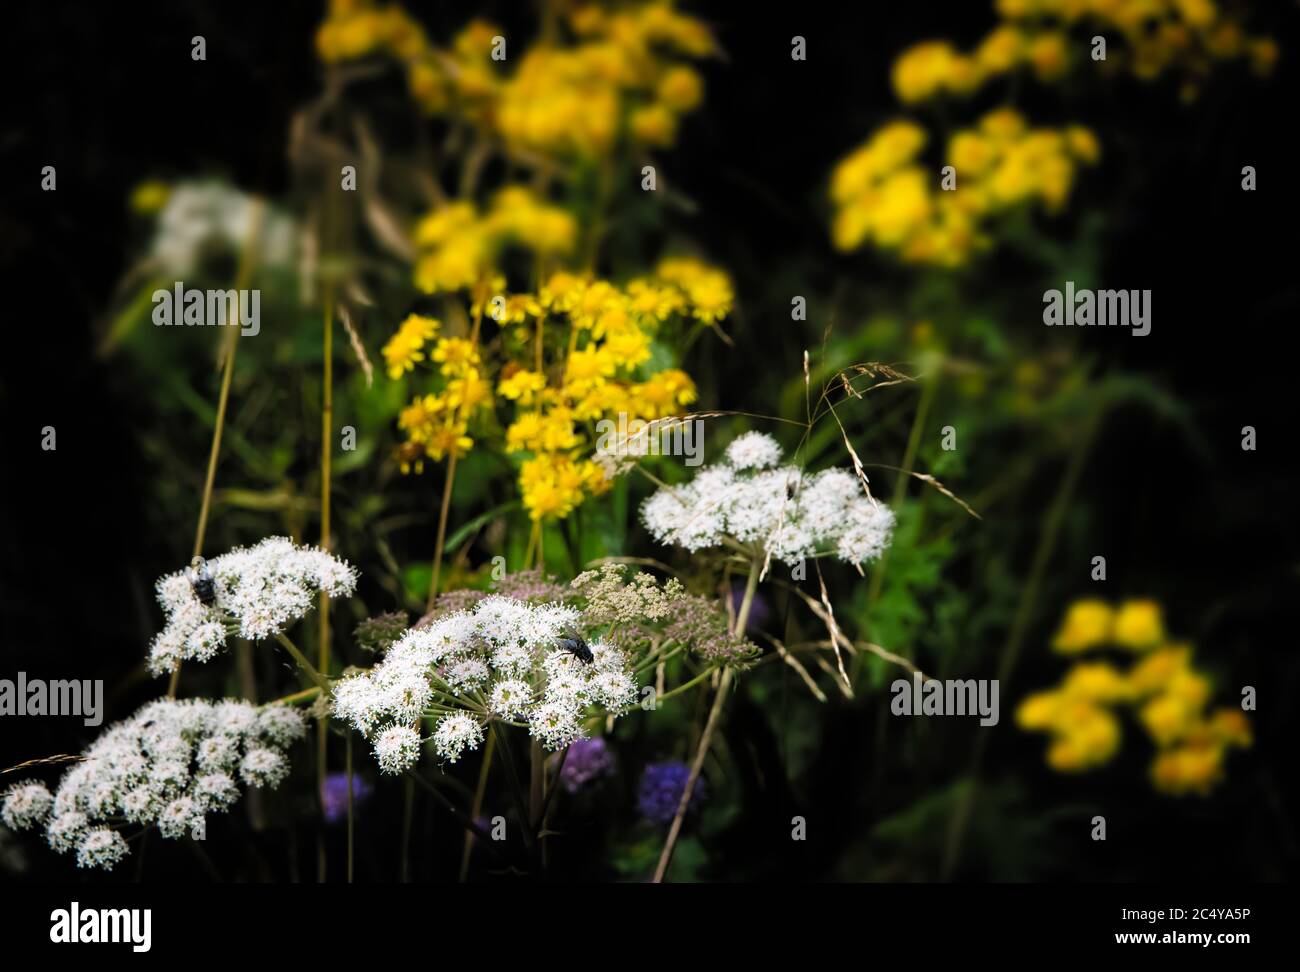 Assortiment de fleurs sauvages jaunes et blanches sur fond sombre Banque D'Images